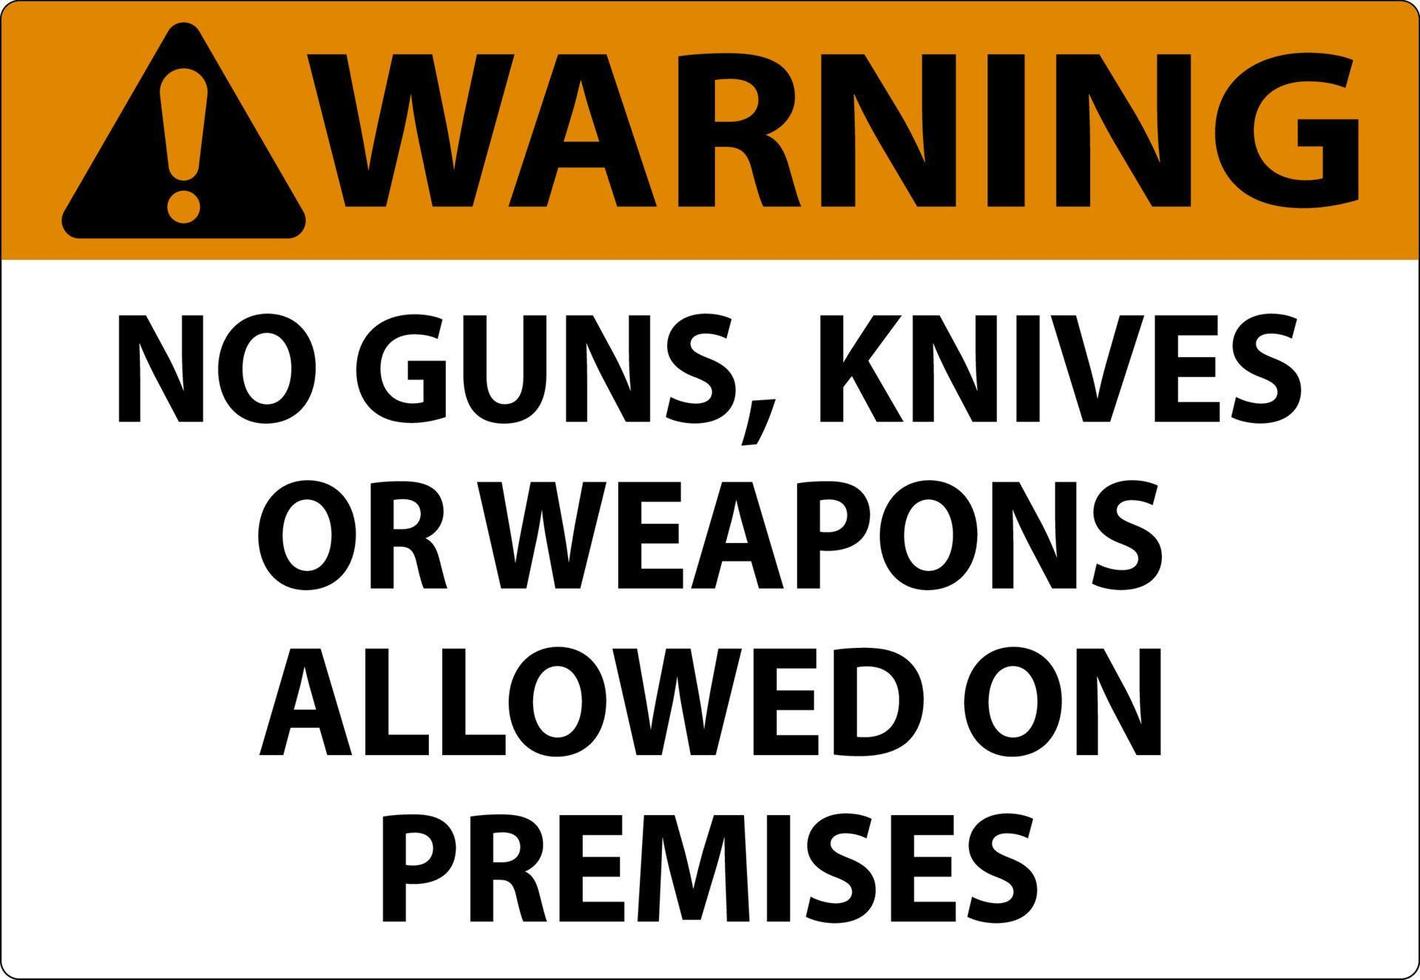 Warnung Waffenregeln unterzeichnen, dass keine Waffen, Messer oder Waffen auf dem Gelände erlaubt sind vektor